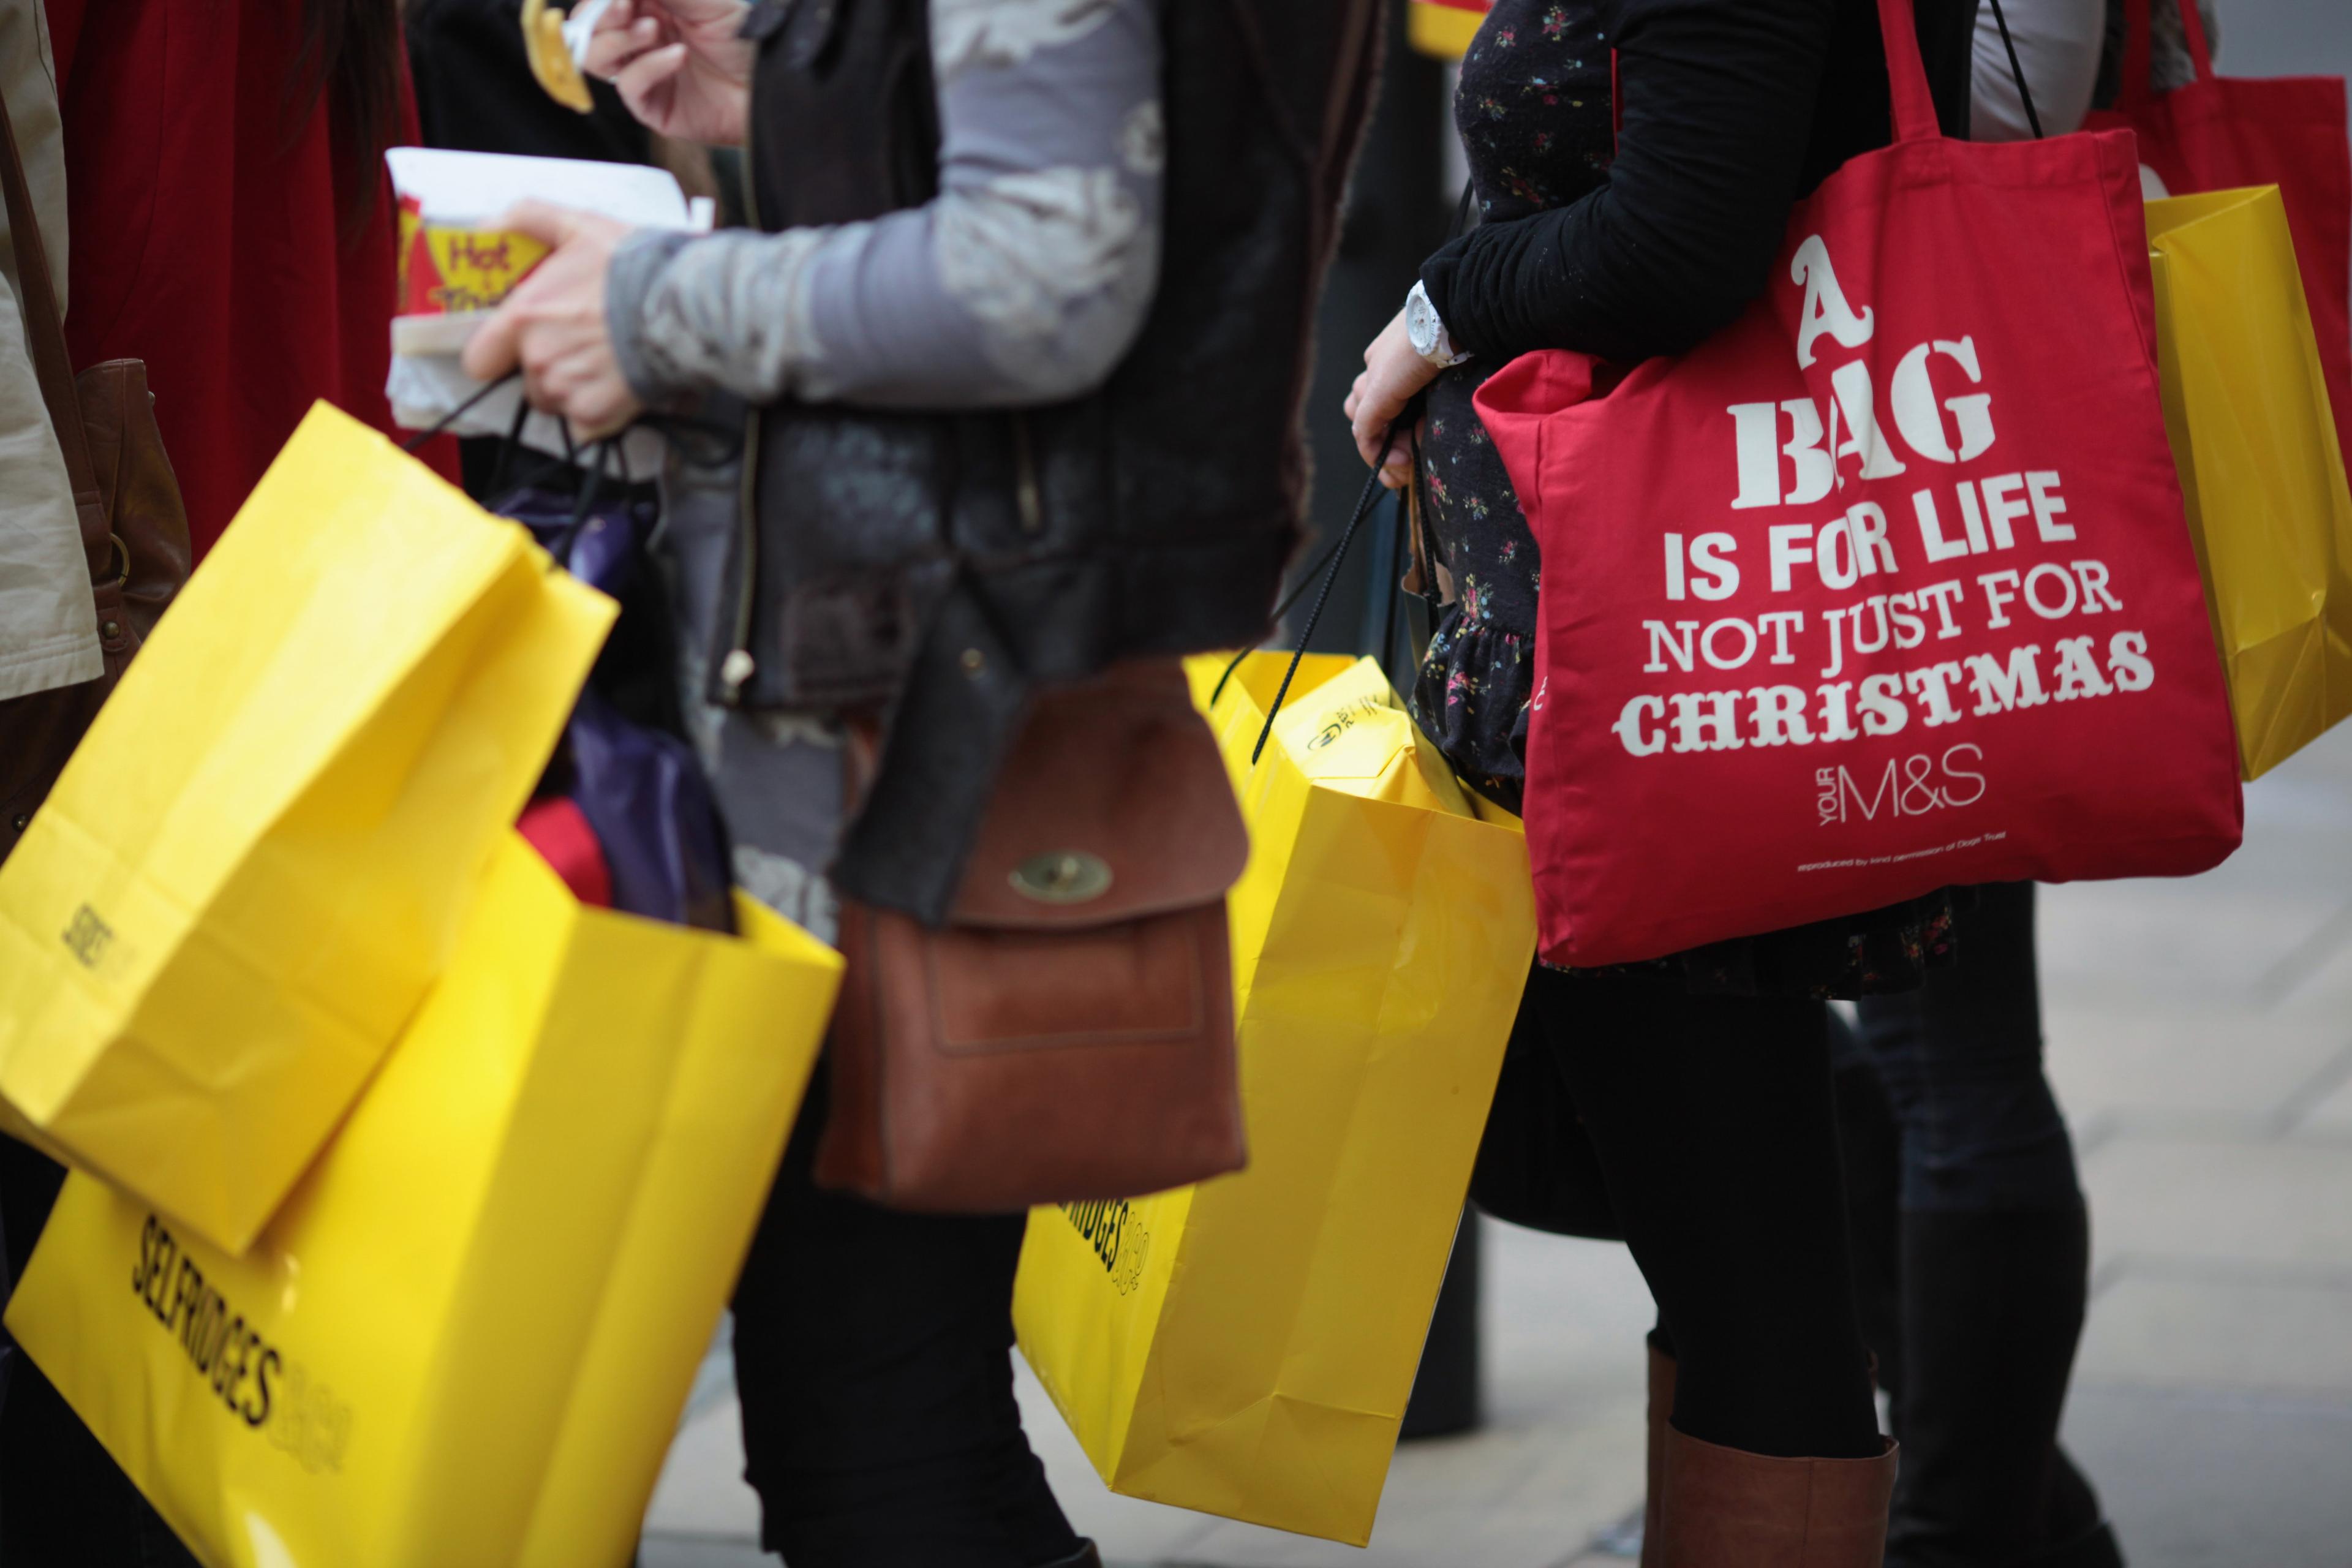 "A bag is for life not just for Christmas". En kasse inte bara till jul, utan för ett helt liv. Londons julhandel. (Foto: Dan Kitwood /Getty Images) 